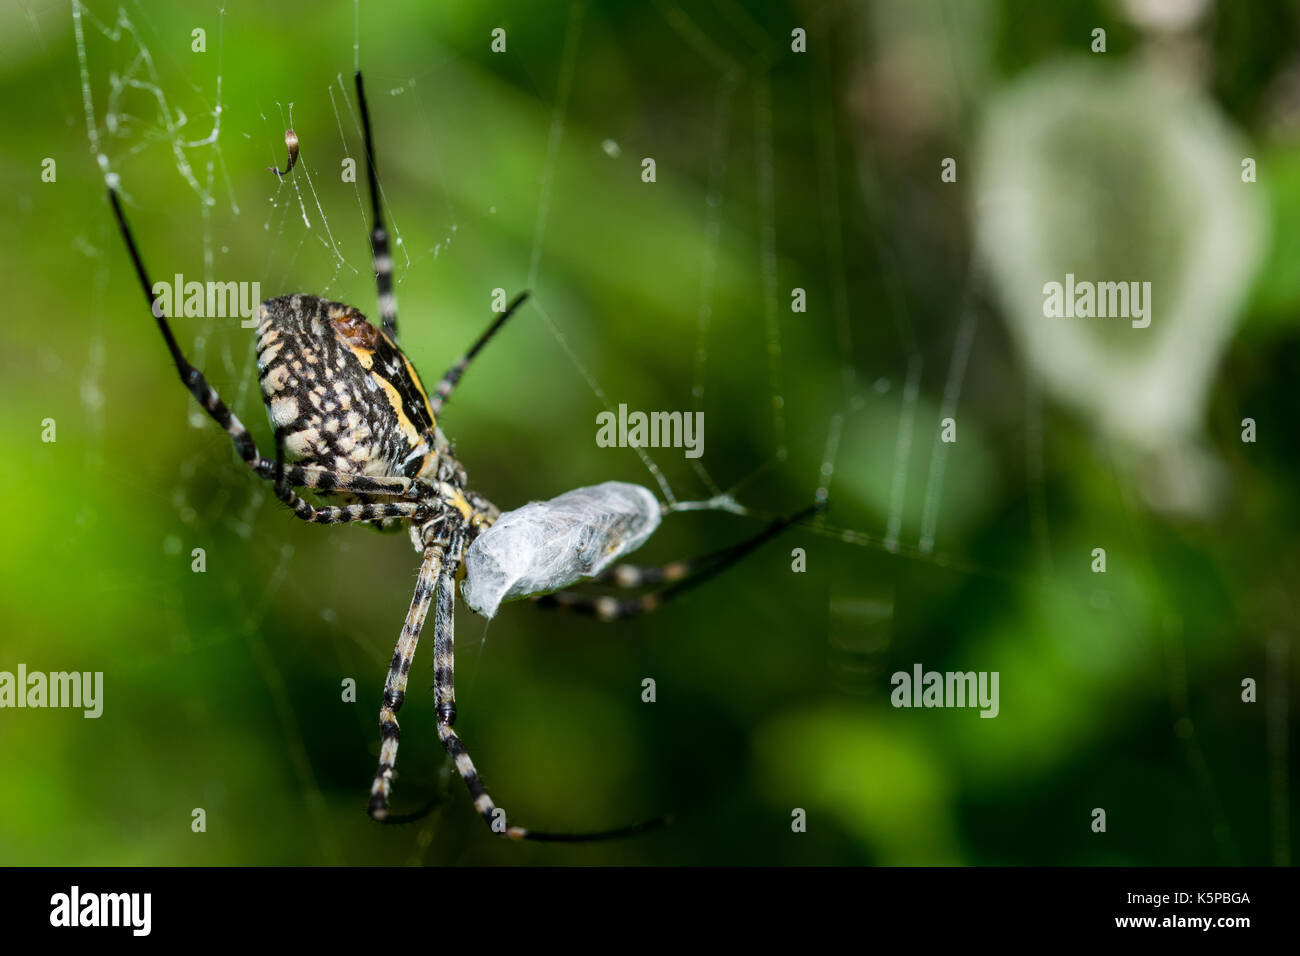 Una araña Argiope anillados (Argiope trifasciata) en su web acerca de comer su comida, probablemente una mosca, en un valle seco en Malta. Saco de huevos de araña es visible. Foto de stock